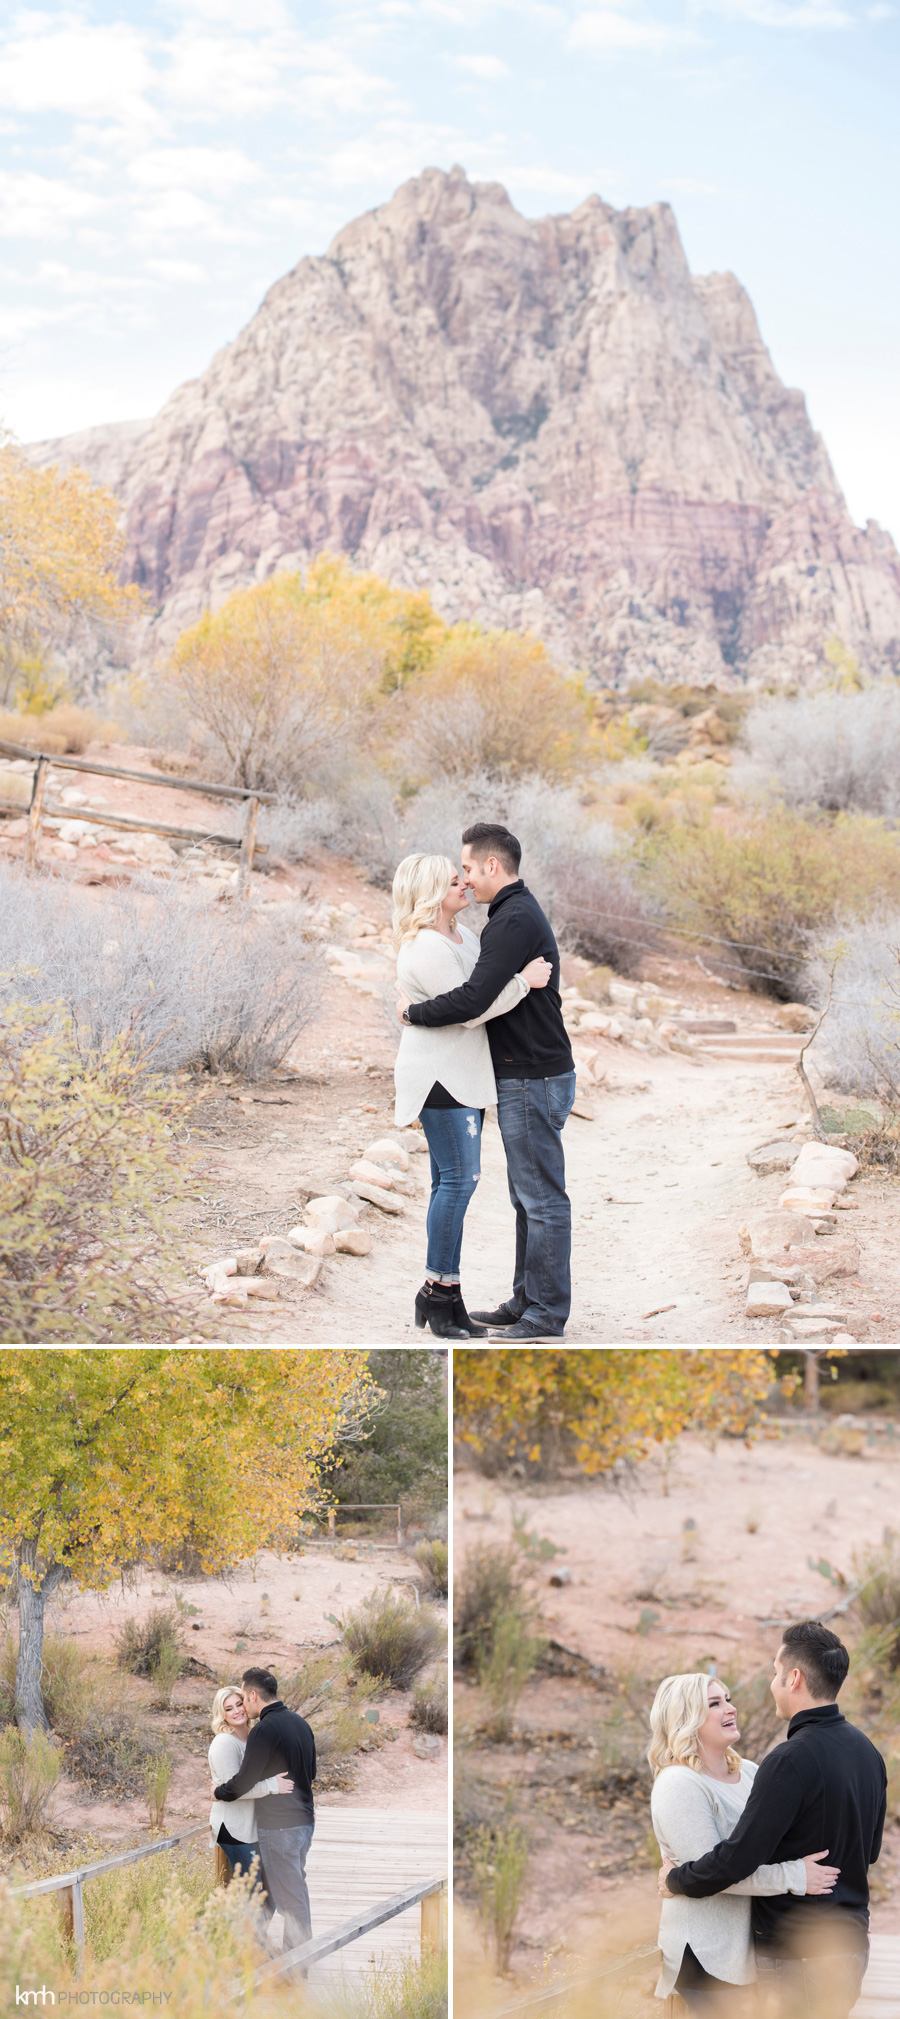 Pregnancy Announcement & Couple's Session at Spring Mountain Ranch | KMH Photography, Las Vegas Portrait Photographer